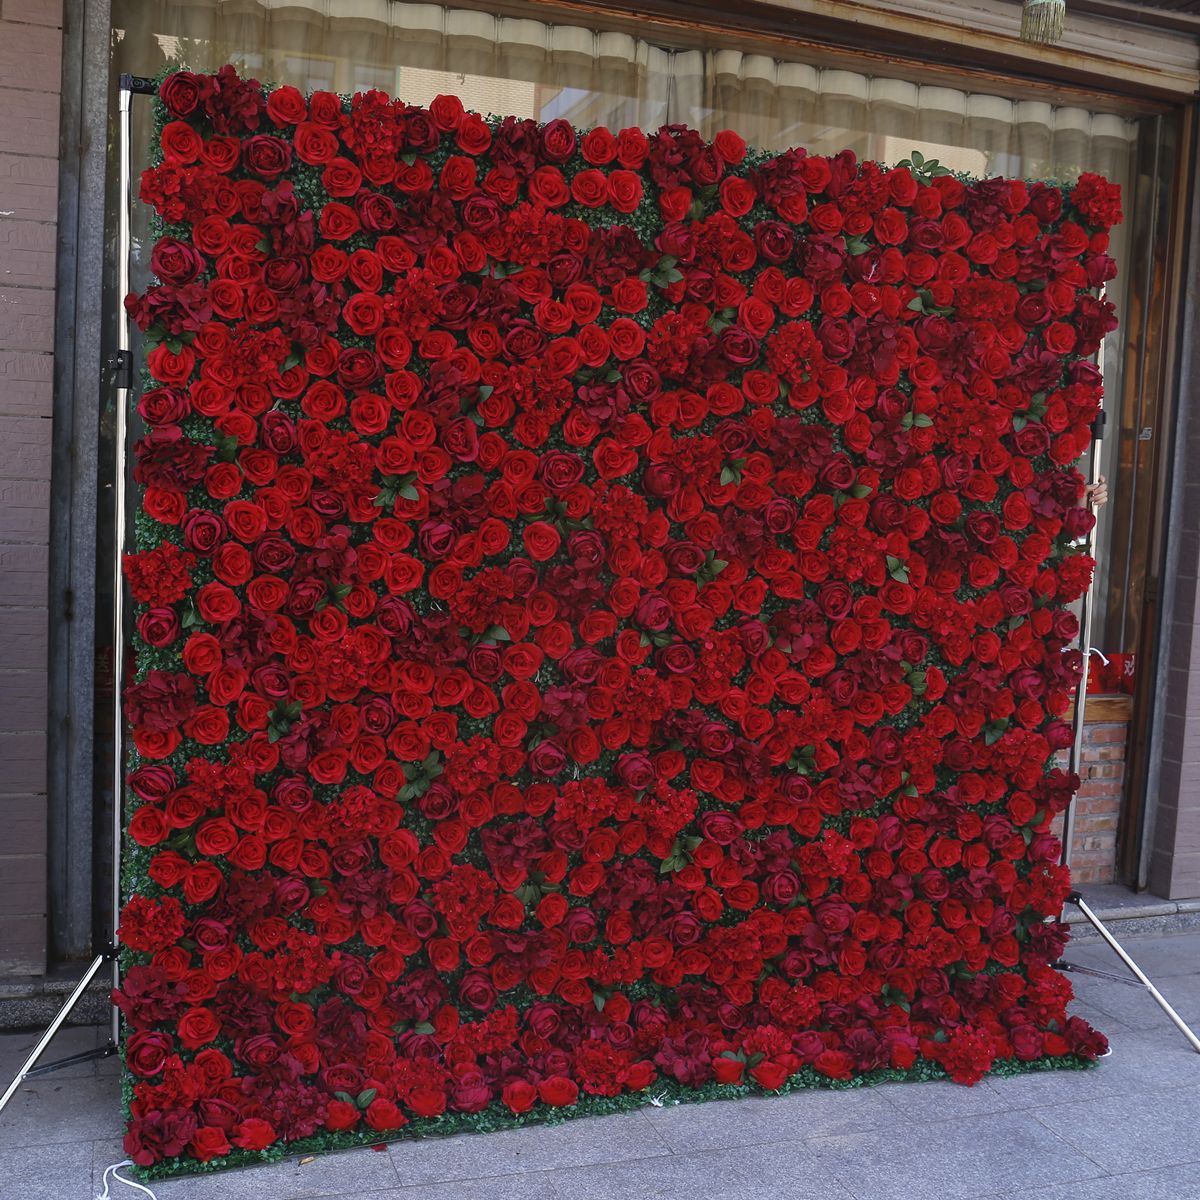 लाल कपड़ा नीचे सिमुलेशन फूल दीवार पृष्ठभूमि दीवार मिलान घास नीचे शादी की सजावट शादी की सजावट